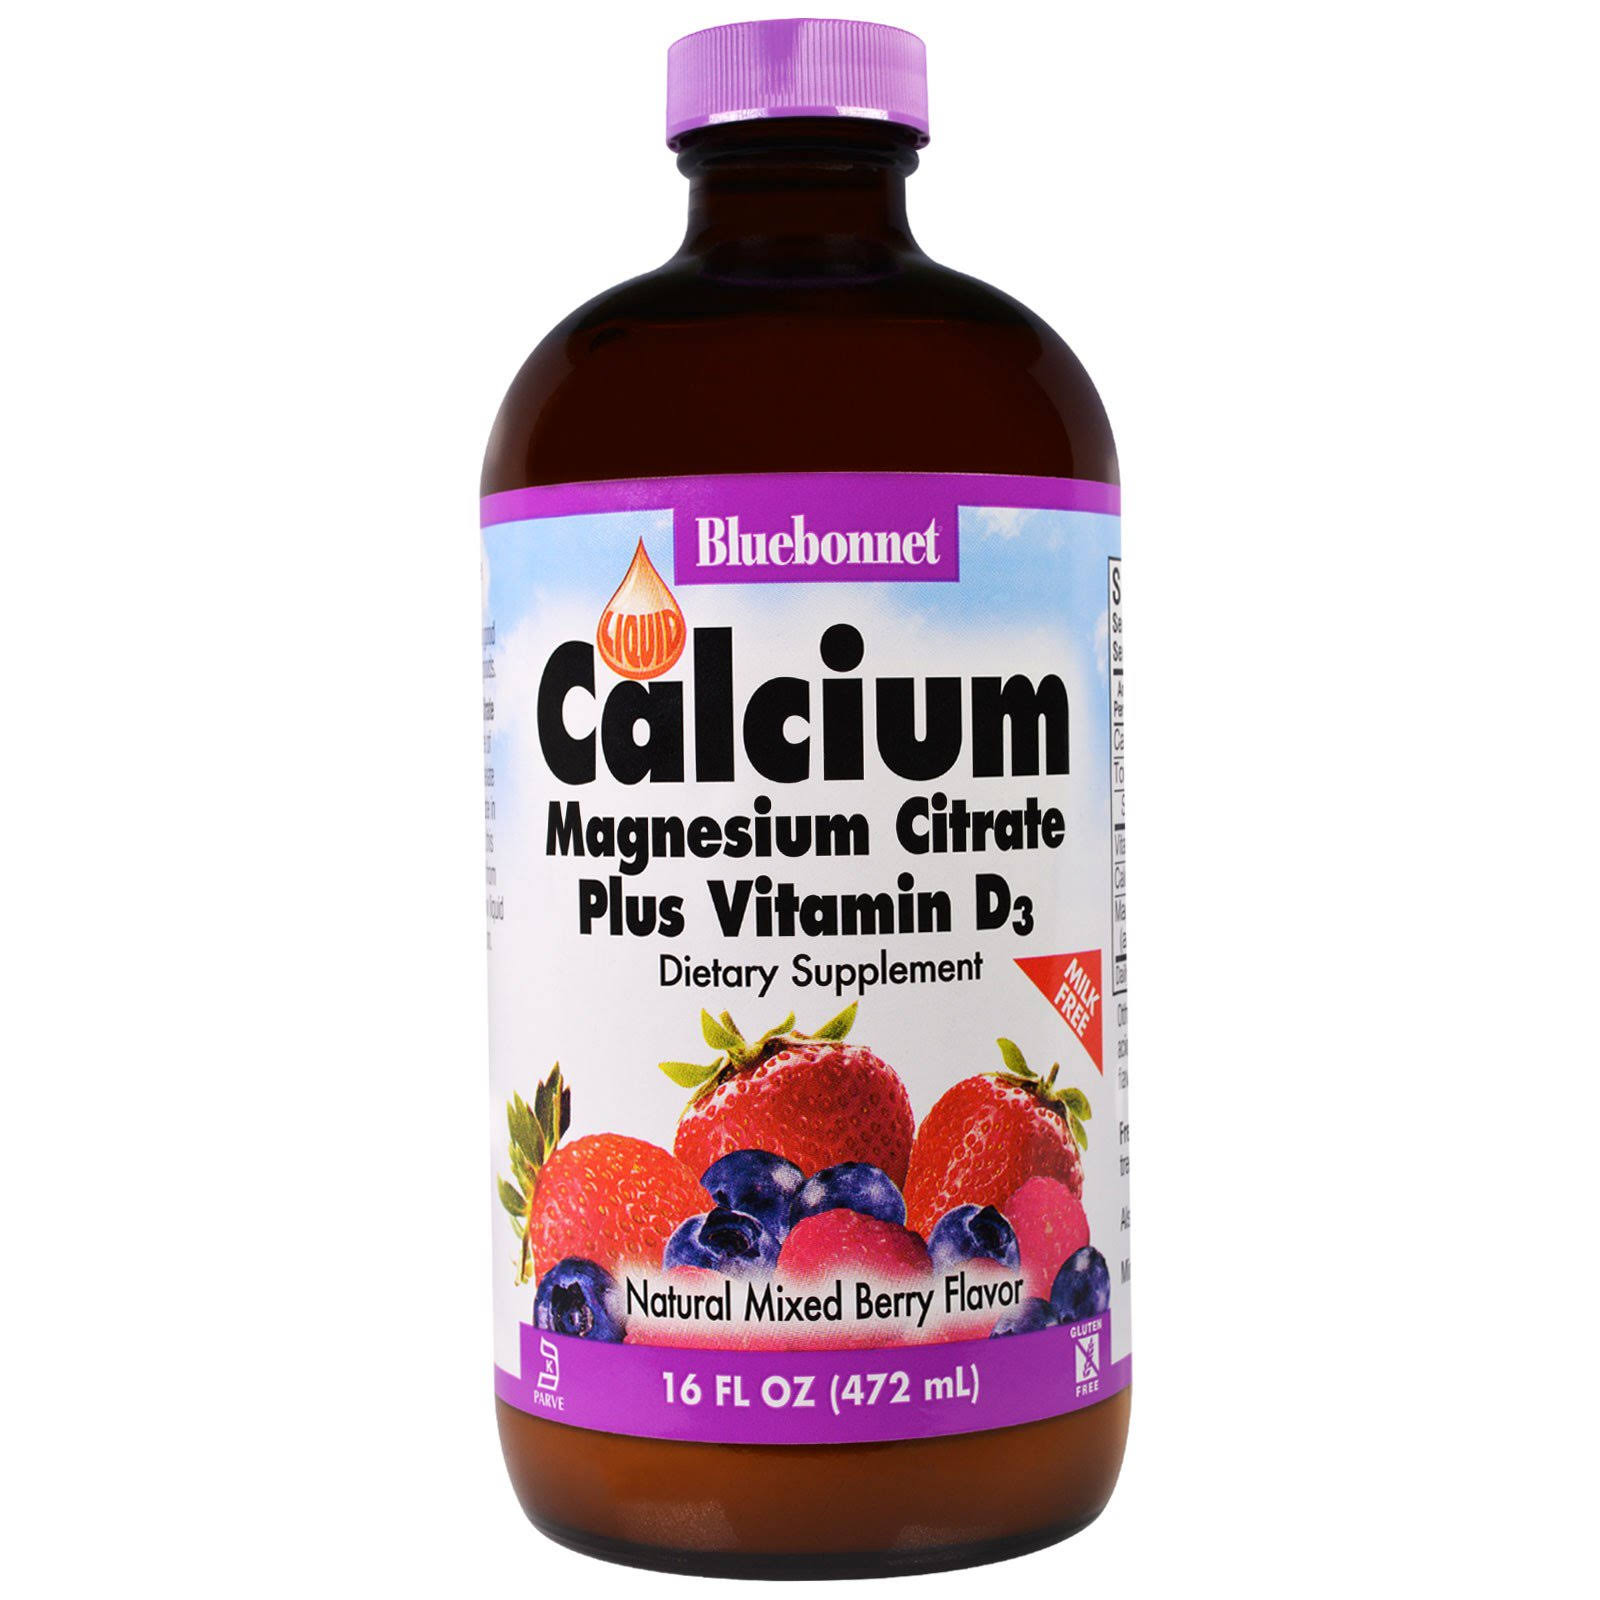 BlueBonnet Liquid Calcium Magnesium Citrate Supplement - Mixed Berry, 472ml